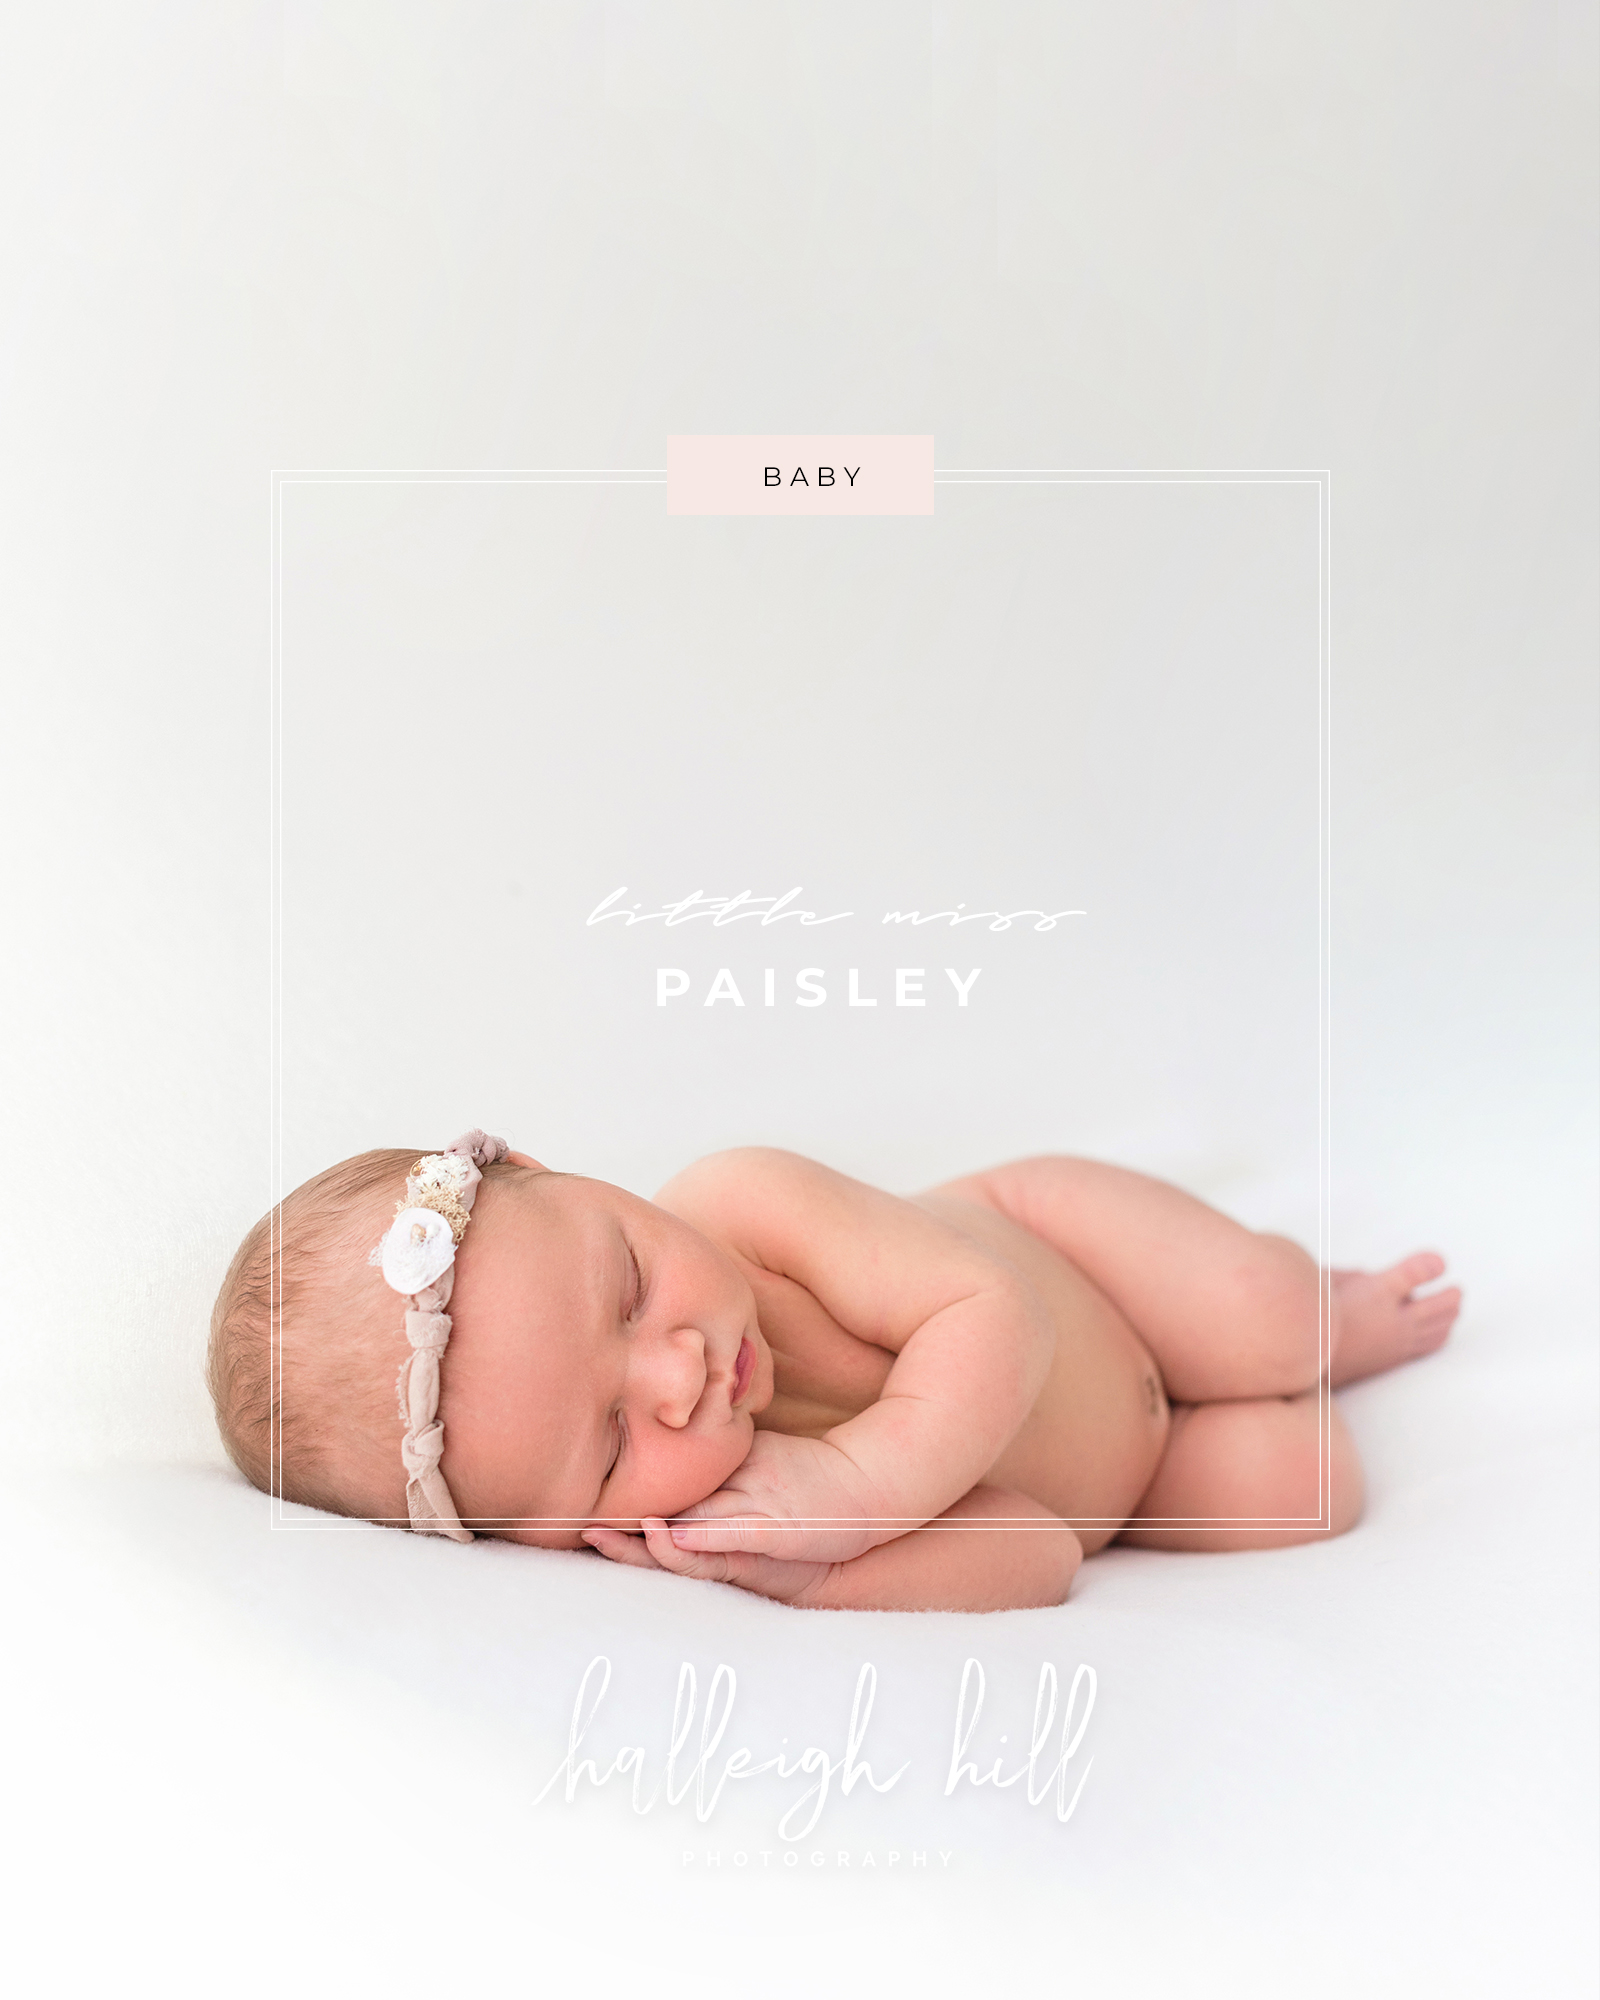 Halleigh Hill Photography, Costa Mesa California Newborn Photographer, Newborn, Newborn Posing Ideas